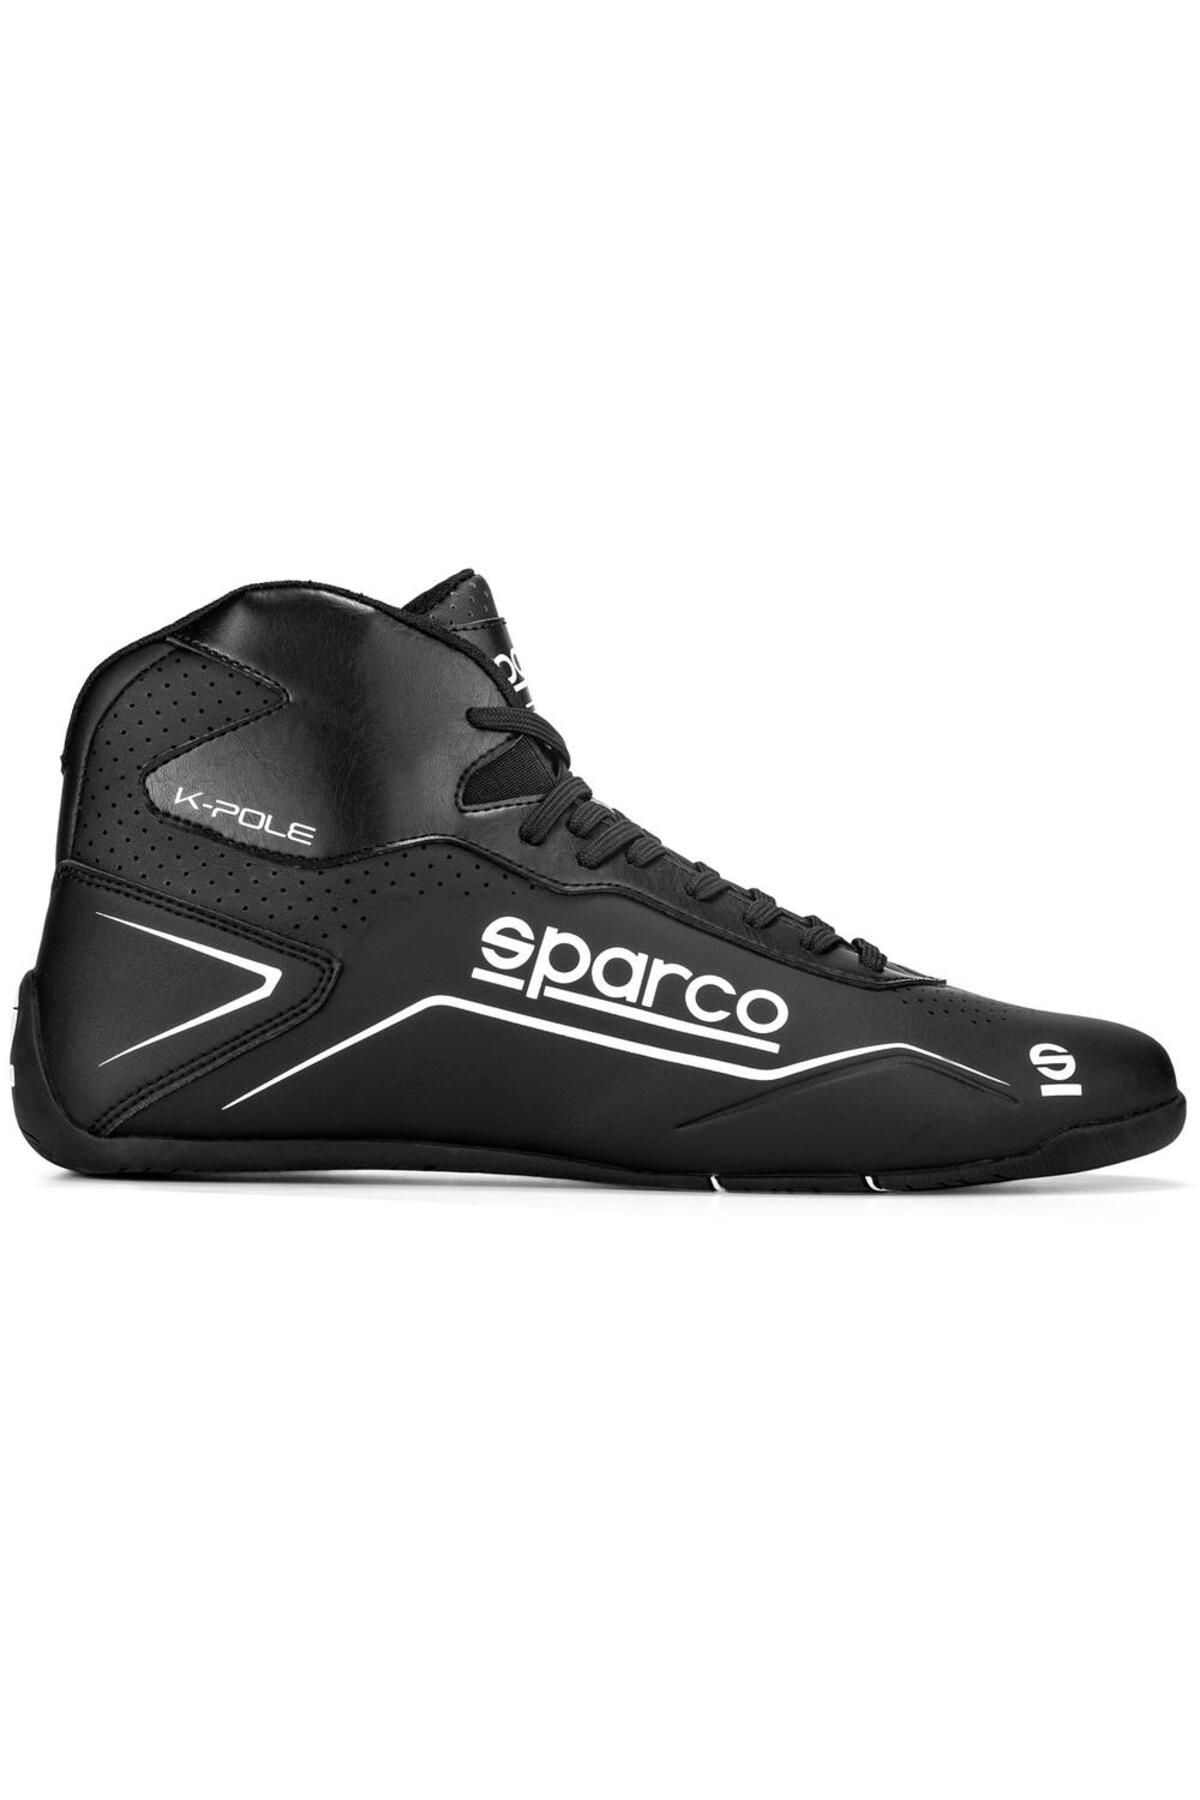 Sparco K-pole Karting Ayakkabısı Siyah 37 Numara